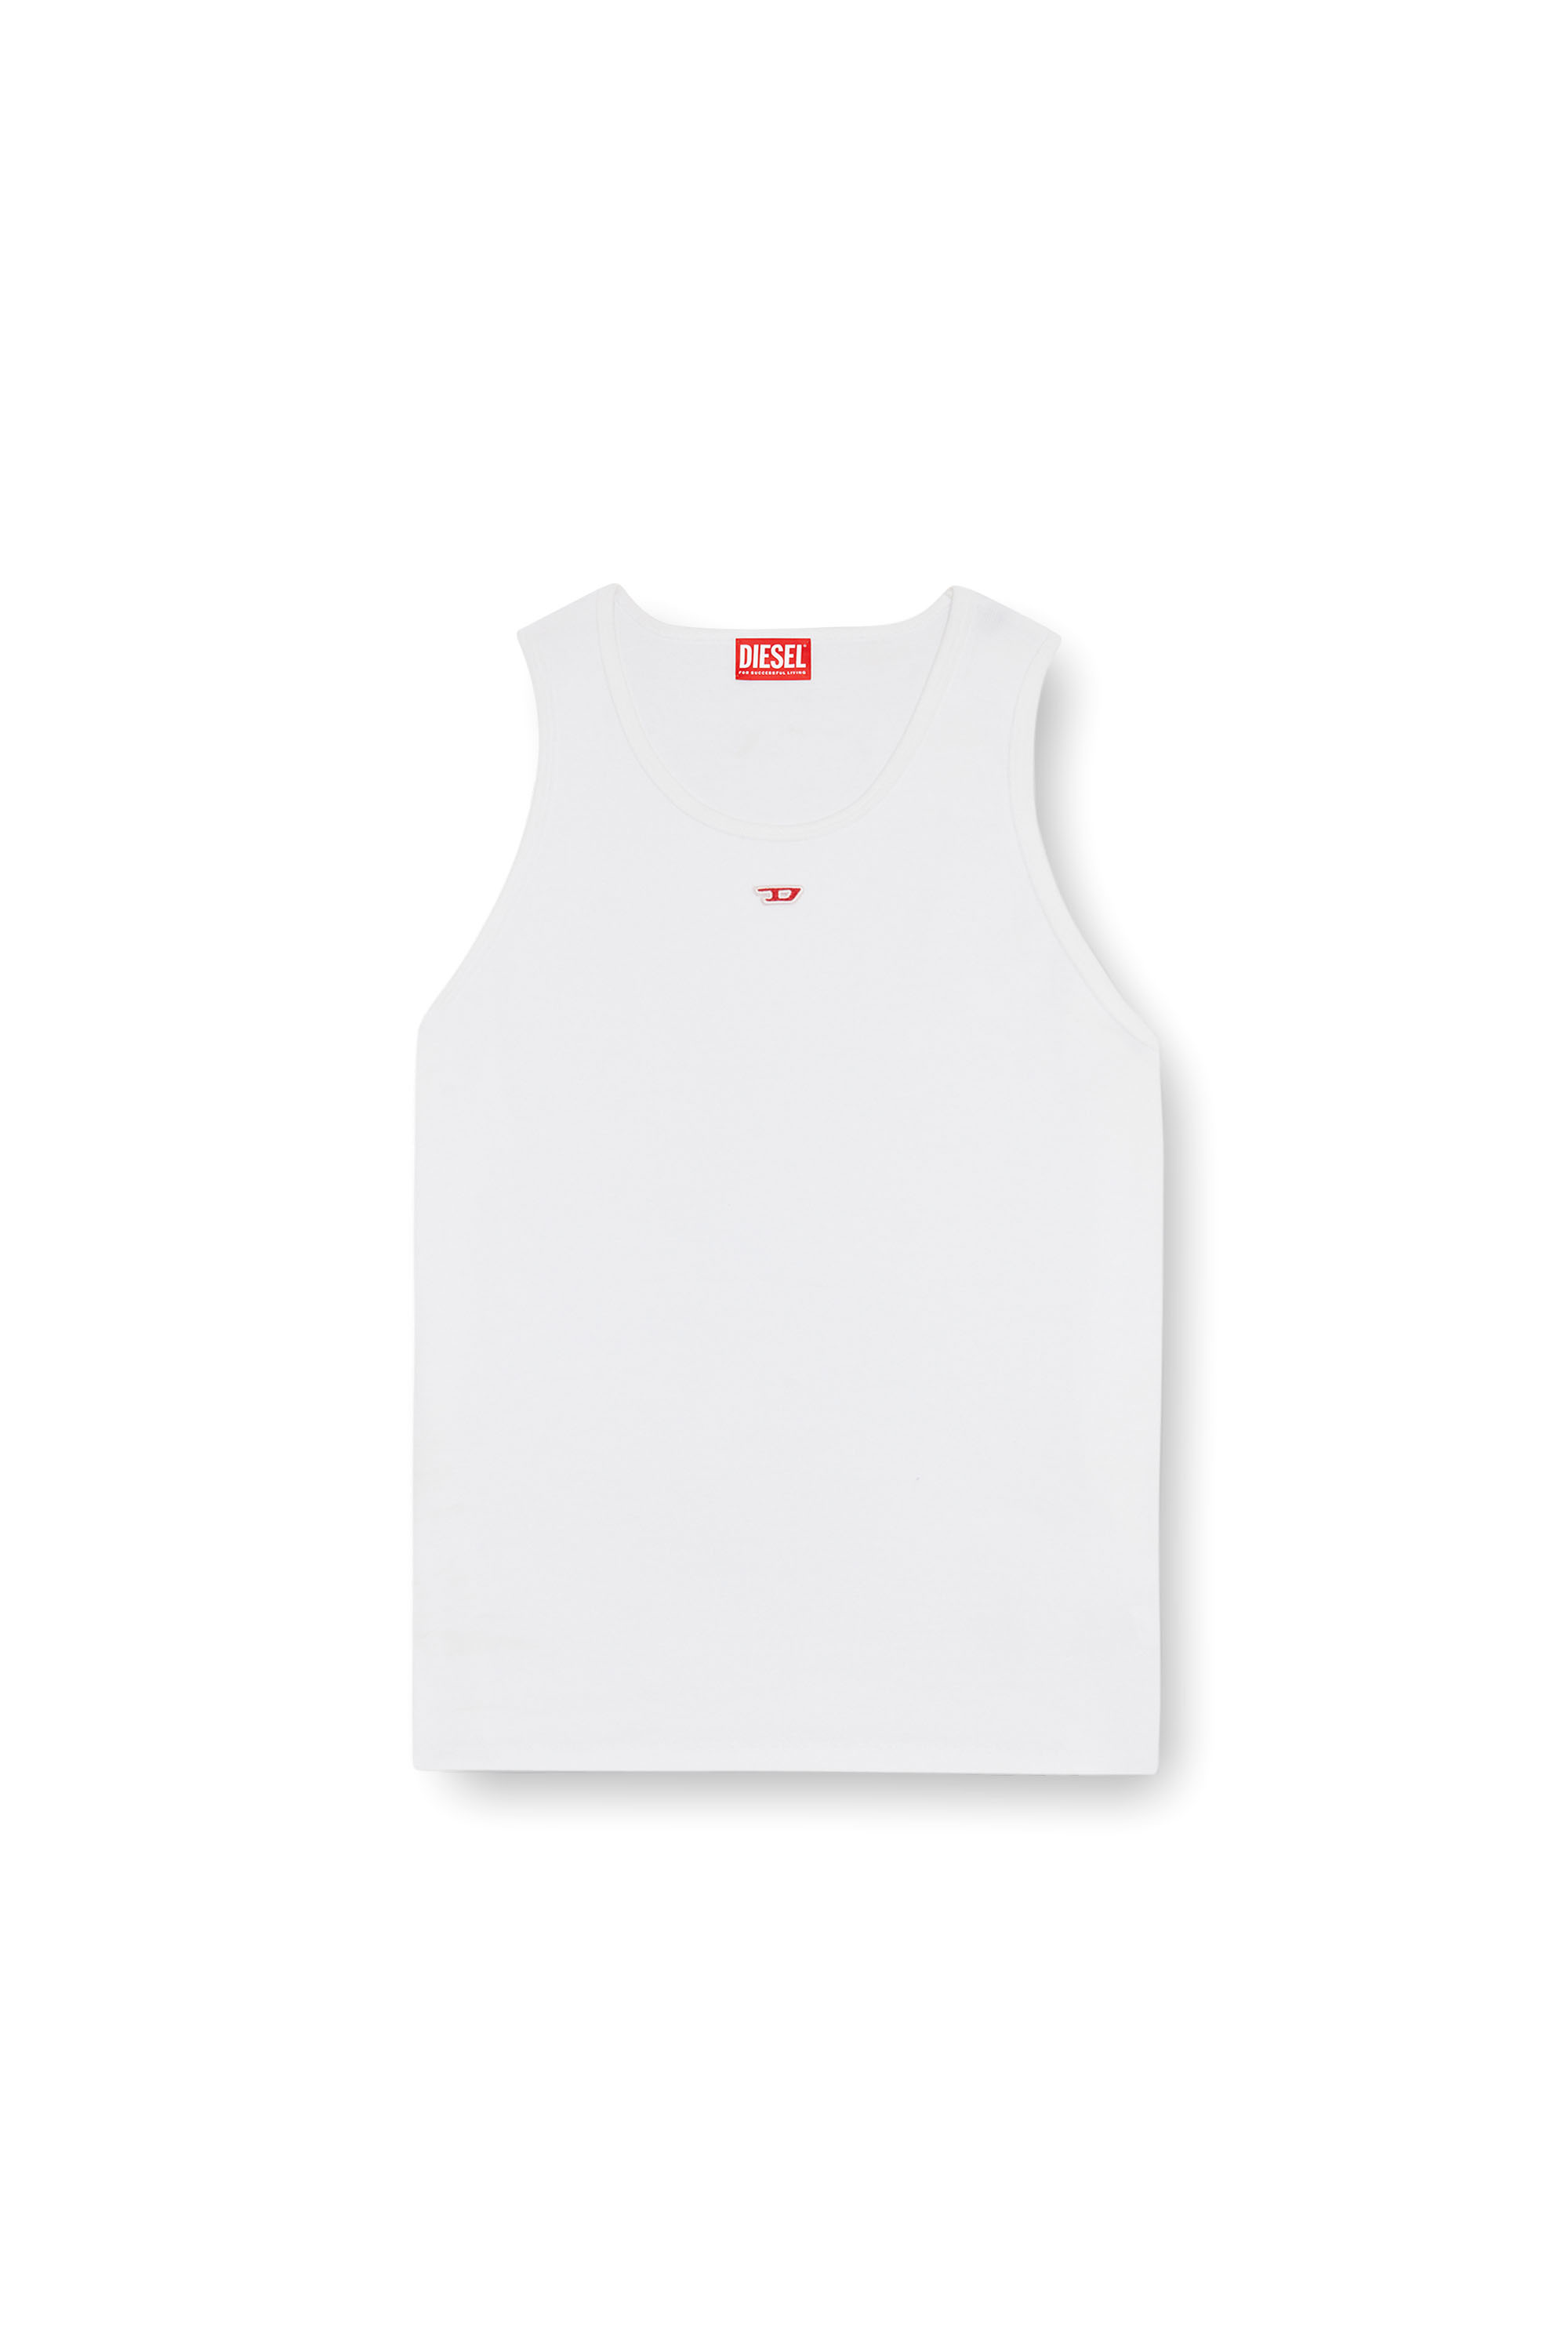 Diesel - T-LIFTY-D, Hombre Camiseta sin mangas con mini parche con el logotipo D in Blanco - Image 3